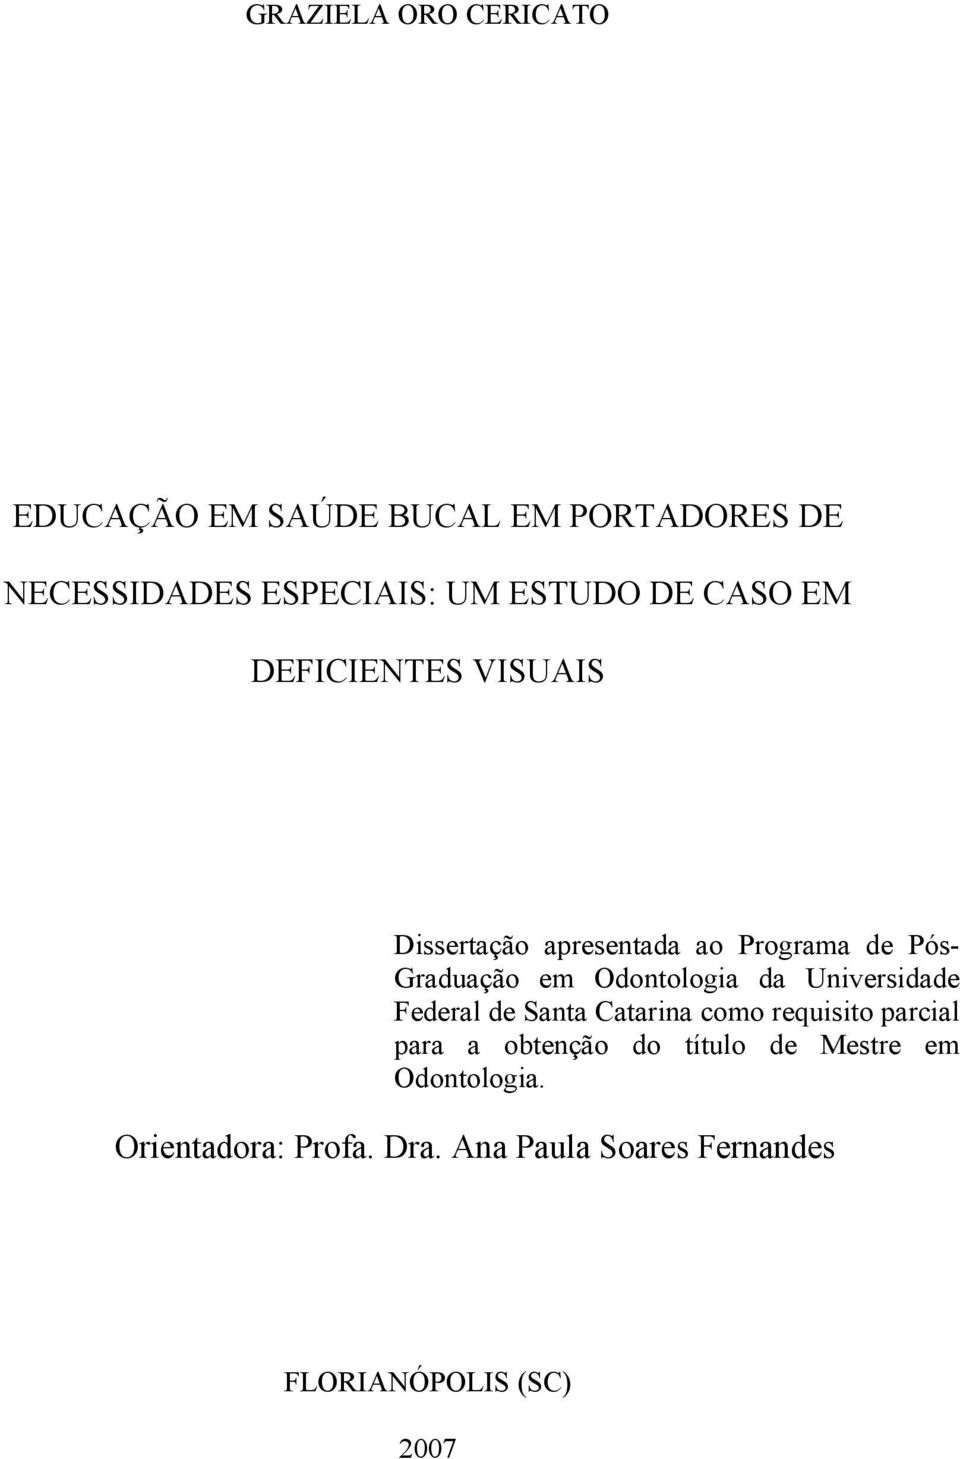 Odontologia da Universidade Federal de Santa Catarina como requisito parcial para a obtenção do